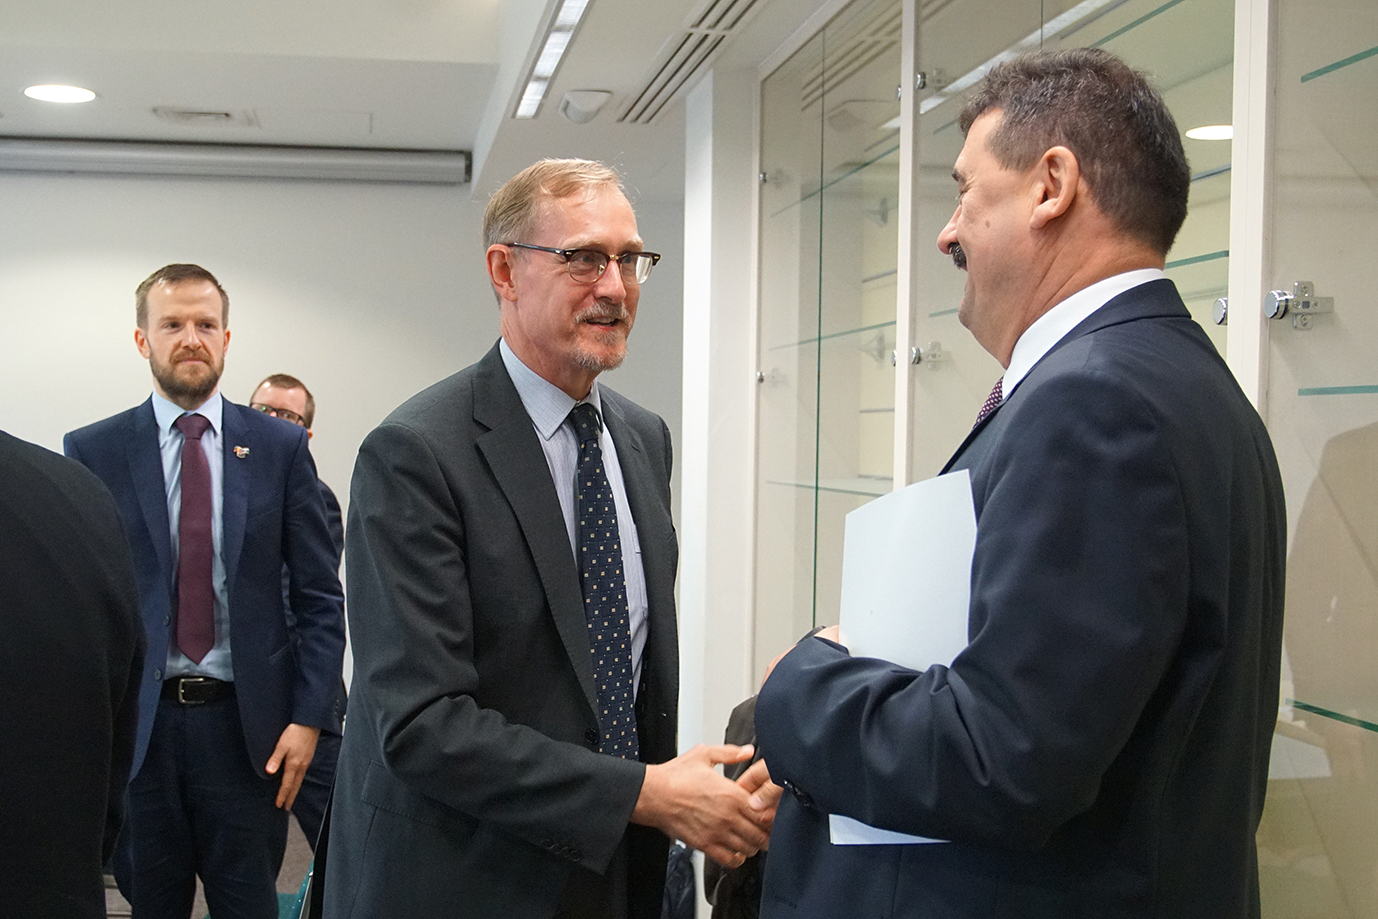 Sekretarz stanu Ryszard Bartosik wita się z Ambasadorem Australii 